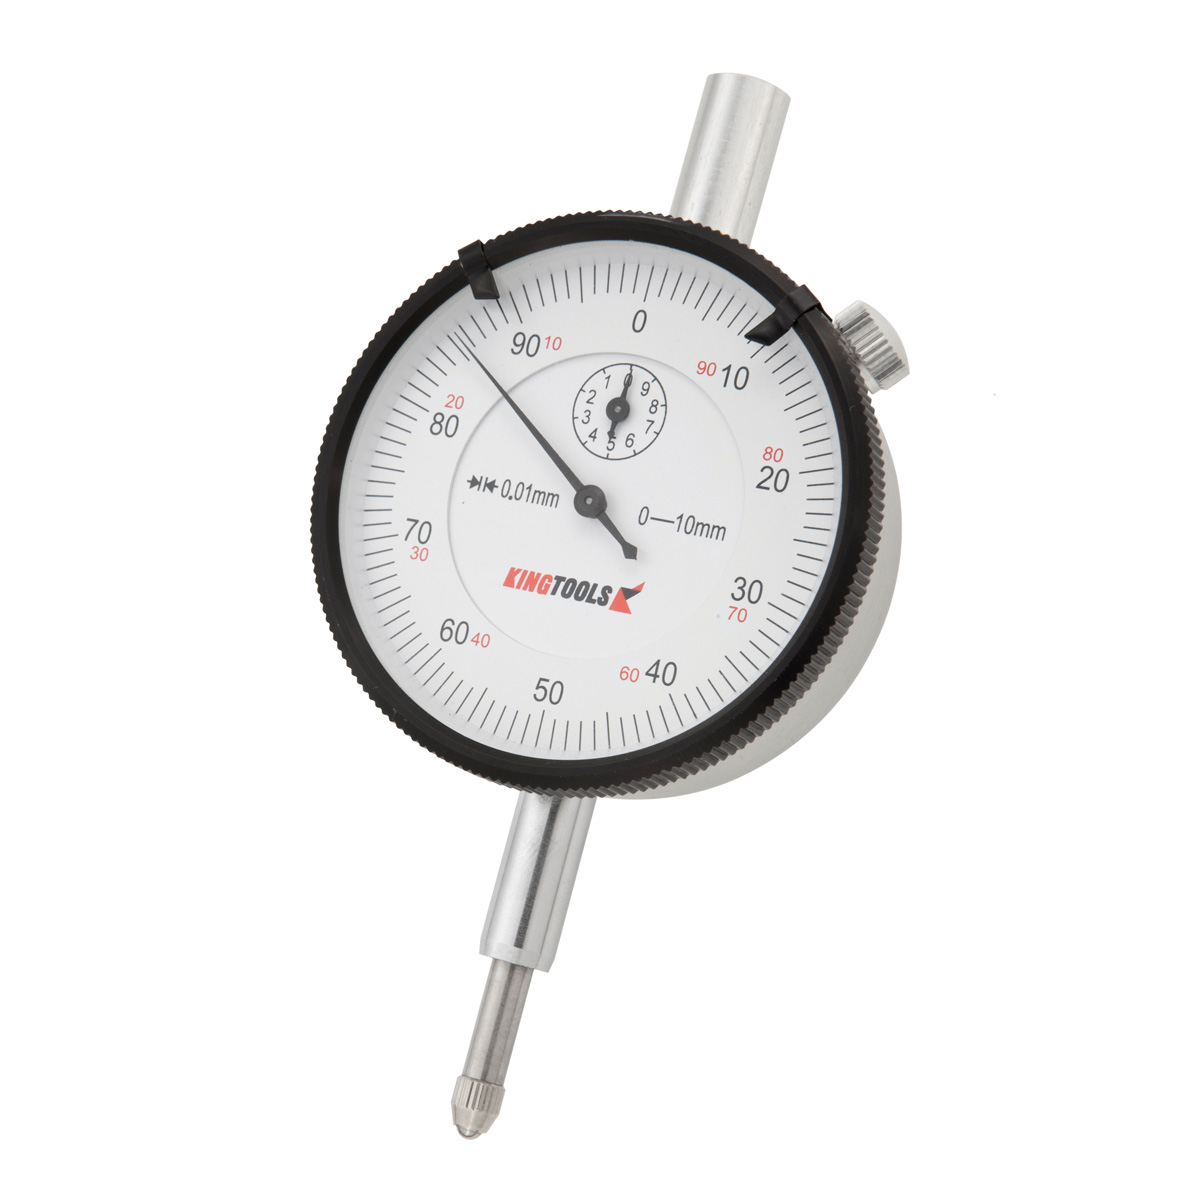 Relógio Comparador 0-10mm em Alumínio Graduação de 0,01mm 506-700 Kingtools